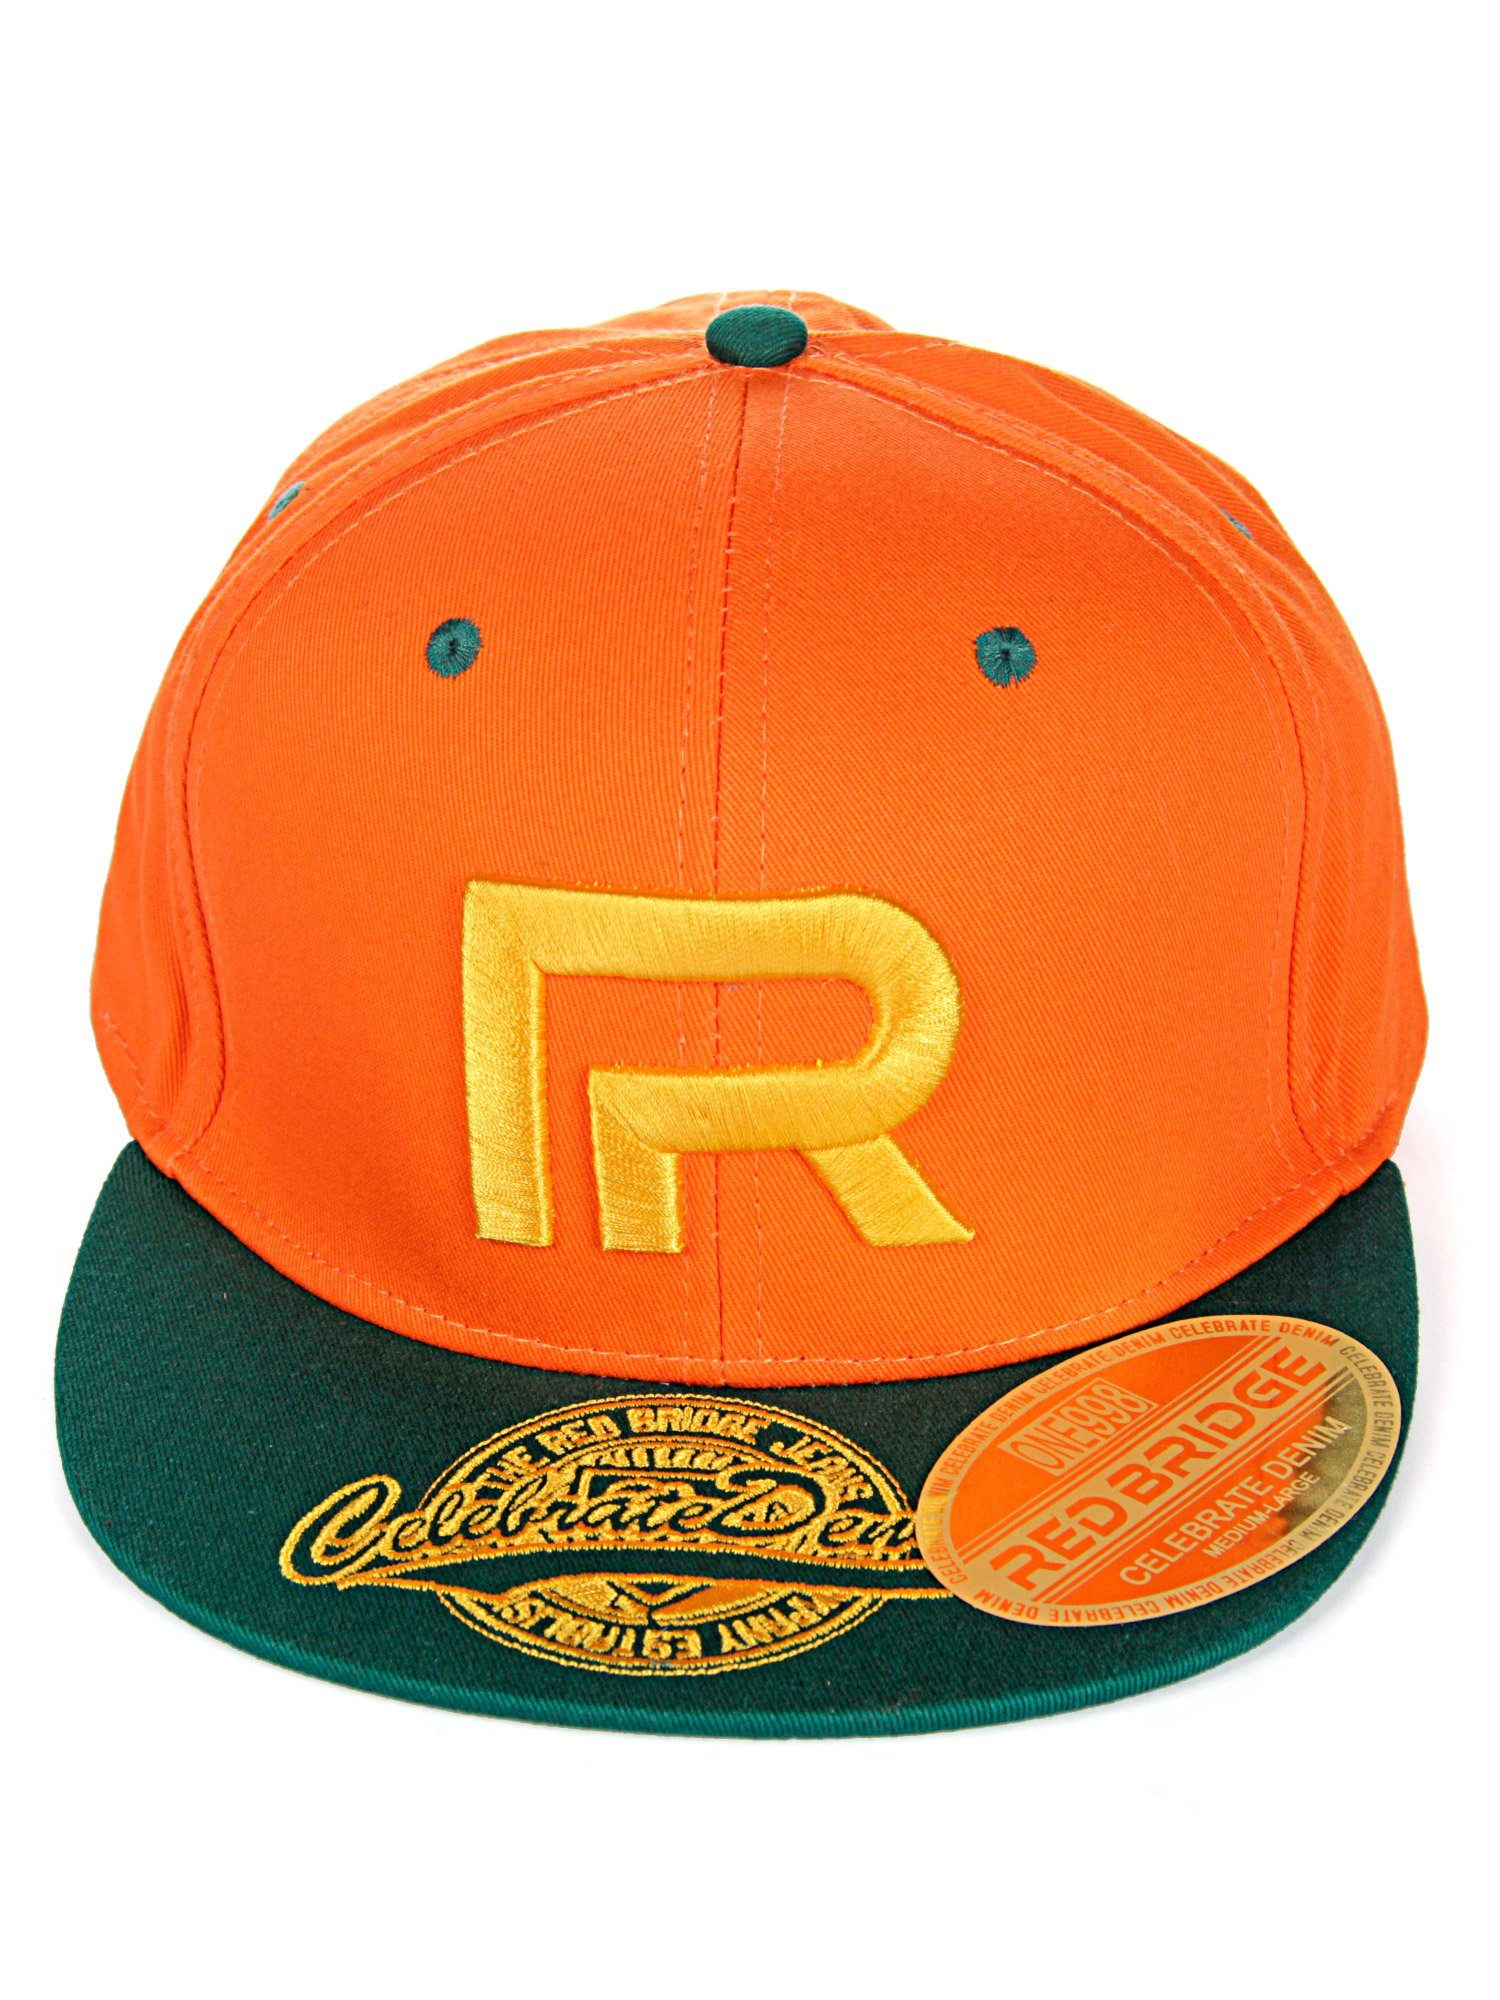 RedBridge Baseball Cap Wellingborough mit Druckverschluss orange-grün